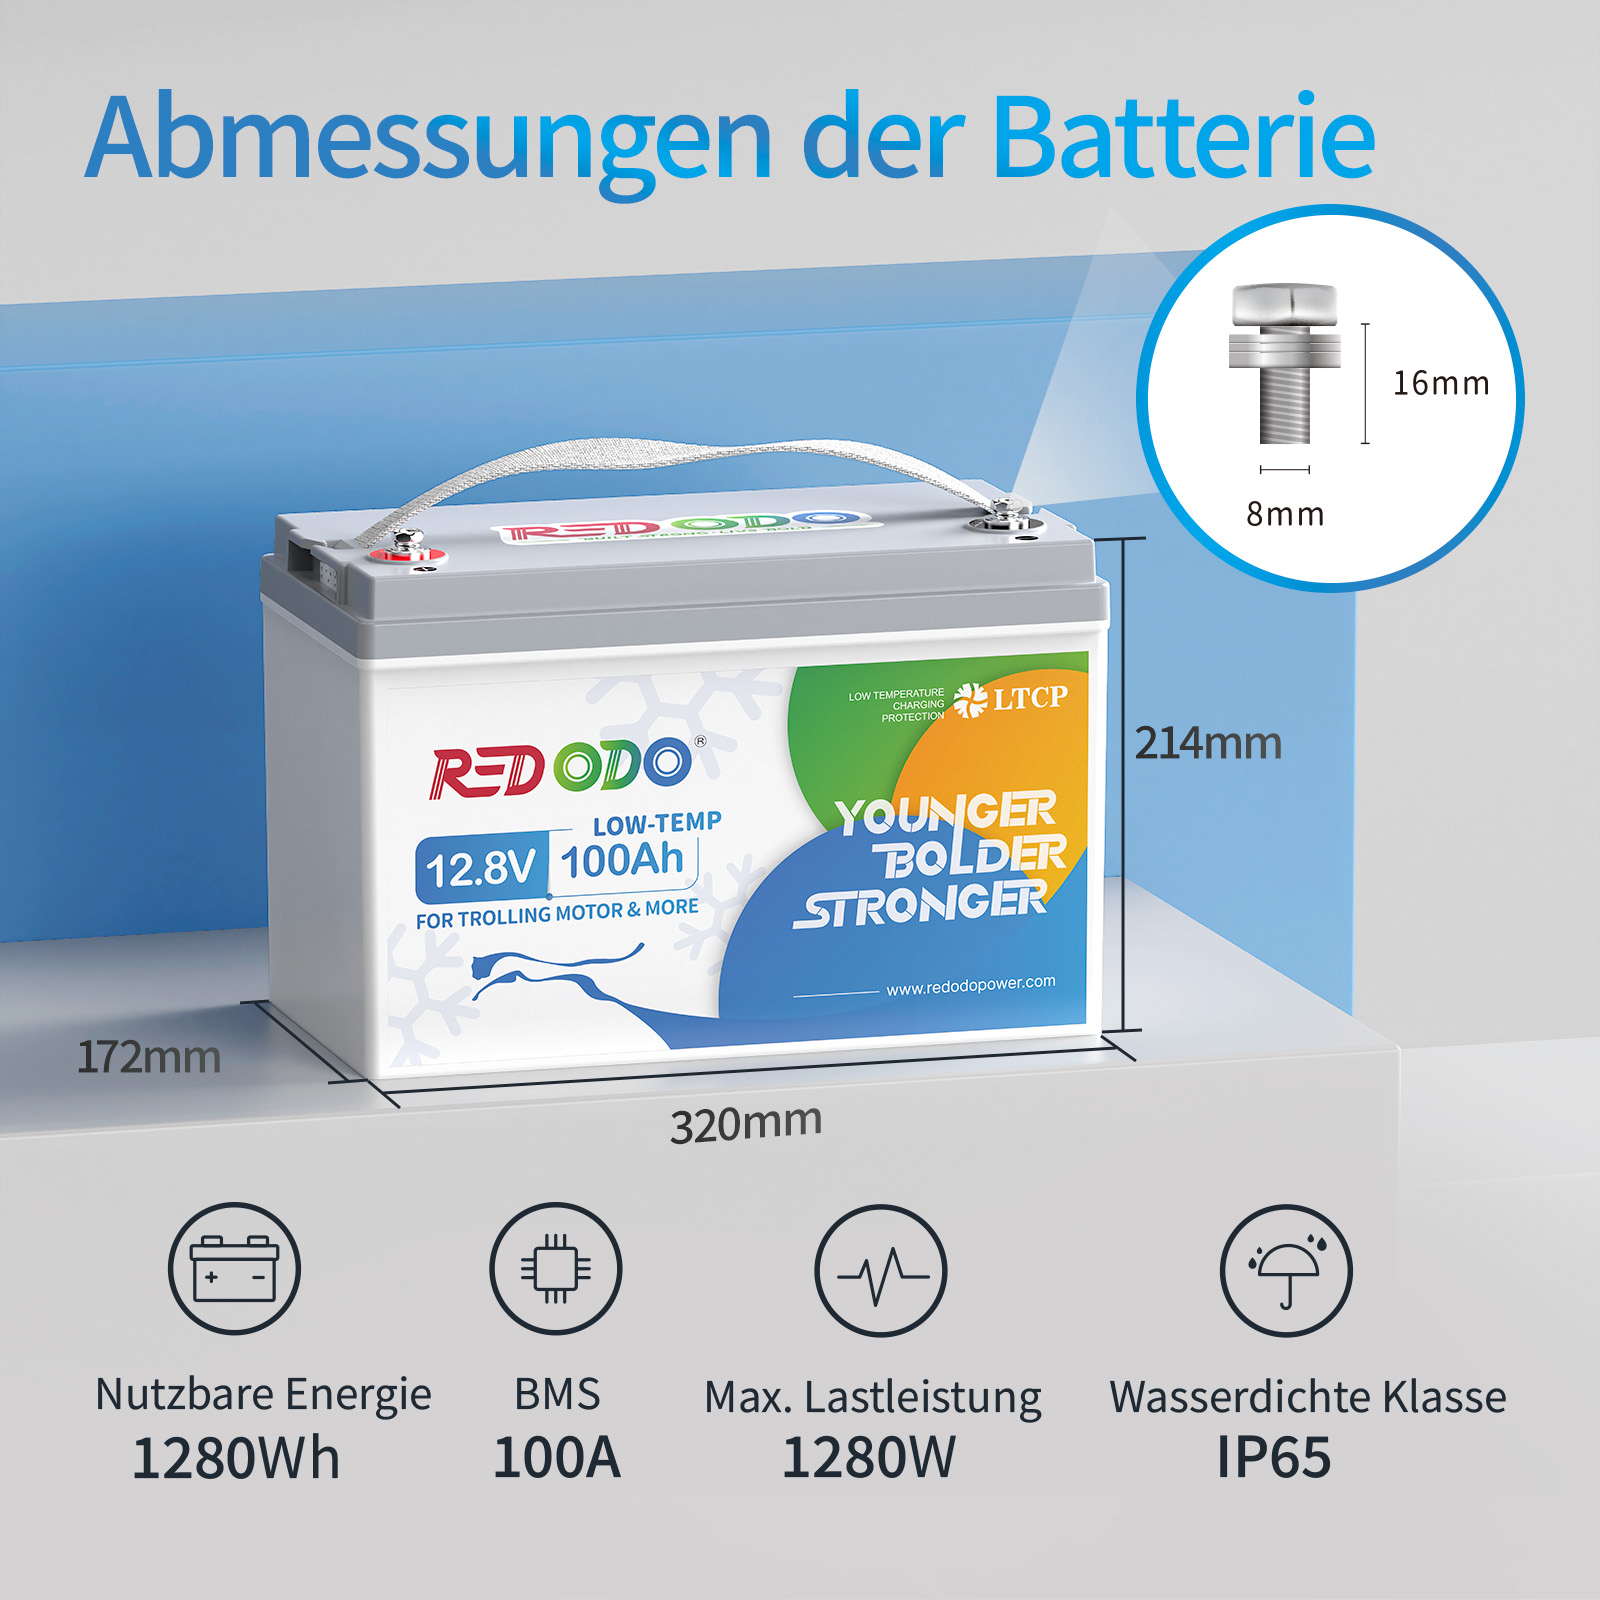 【Nur €266.99】Redodo 12,8V 100AH Low Temp LiFePO4 Deep Cycle Batterie| 1,28kWh & 1,28kW [Versand innerhalb von fünf Werktagen.] redodopower-de